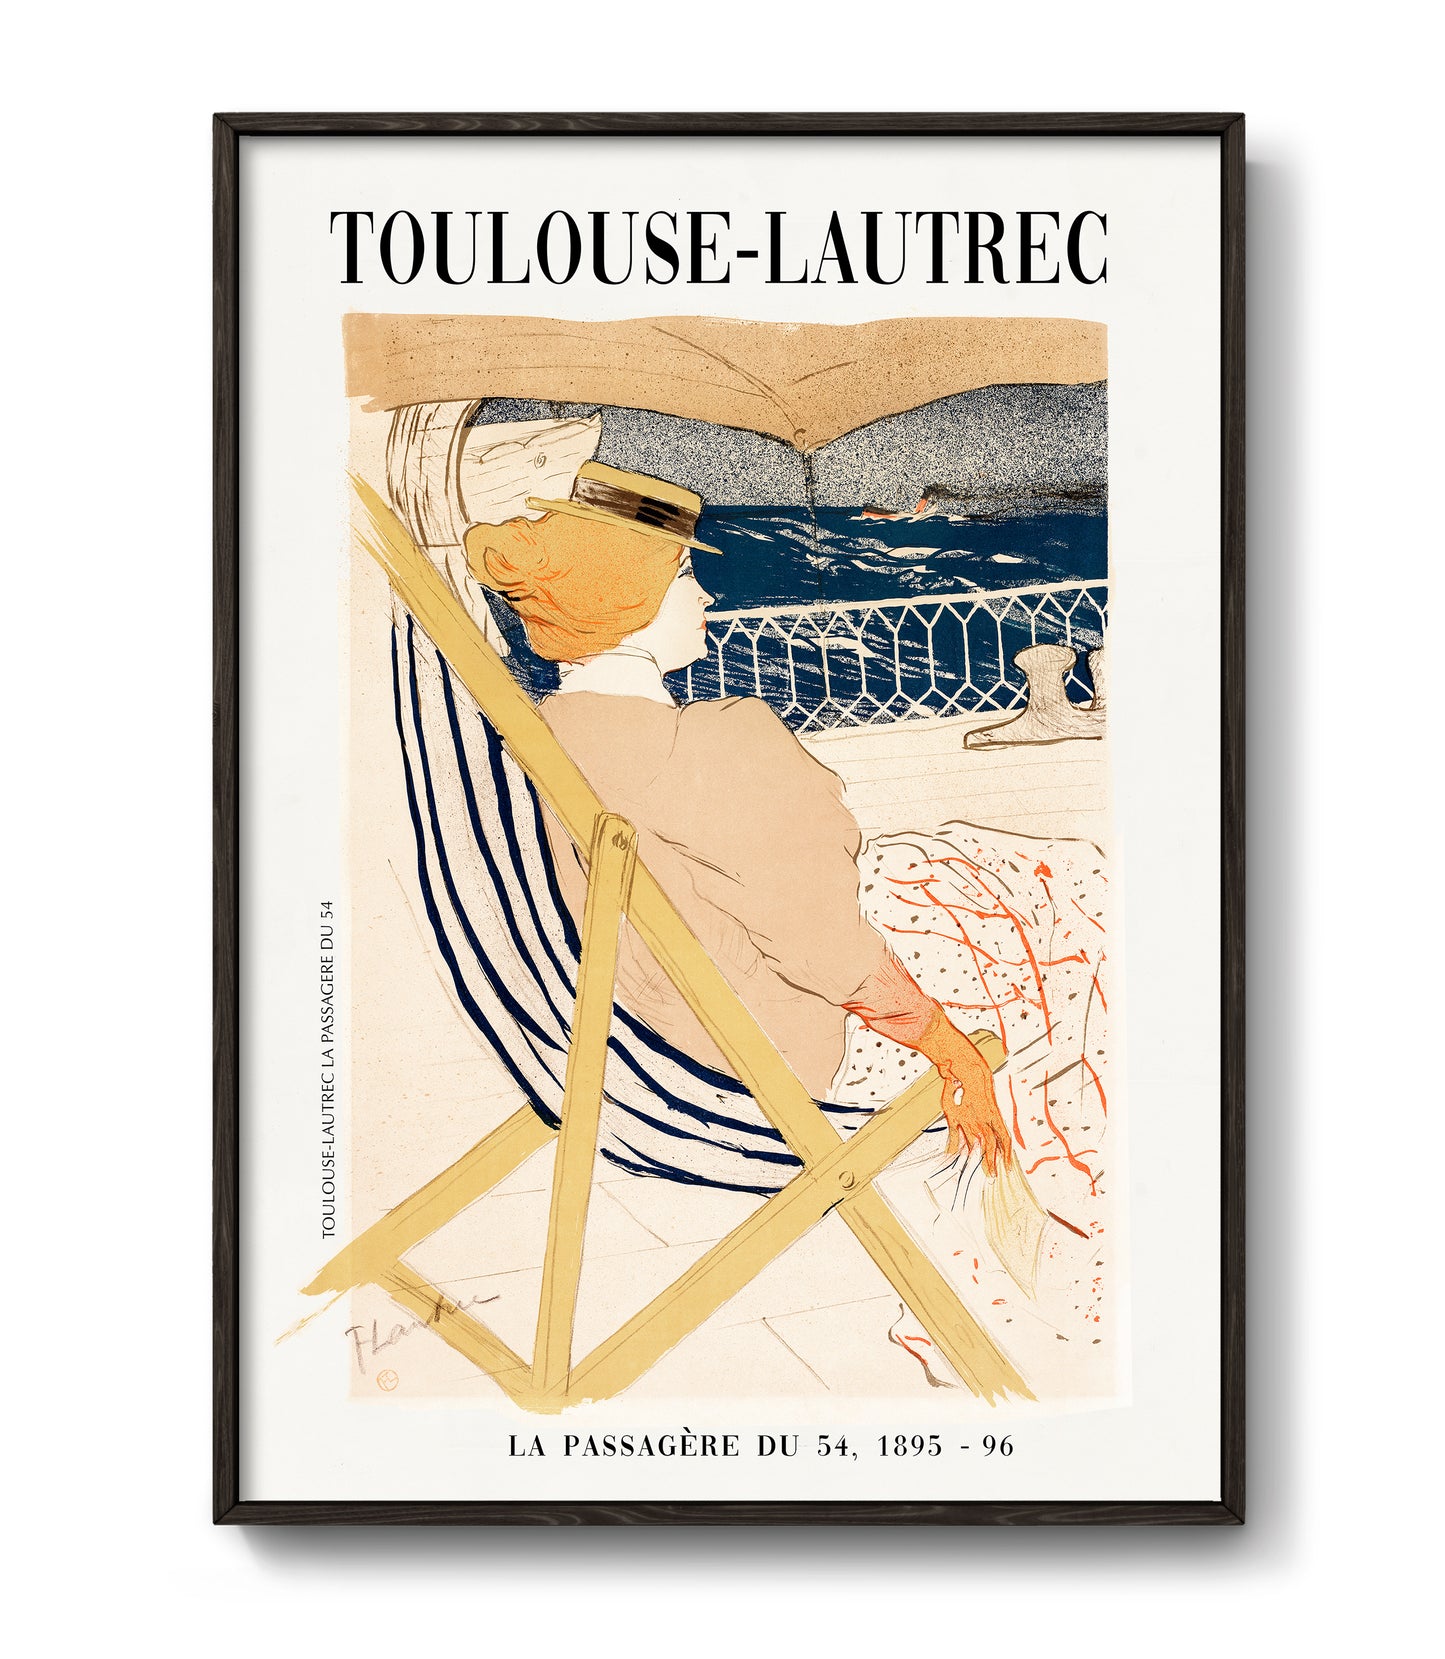 La Passagere du 54 by Henri de Toulouse-Lautrec